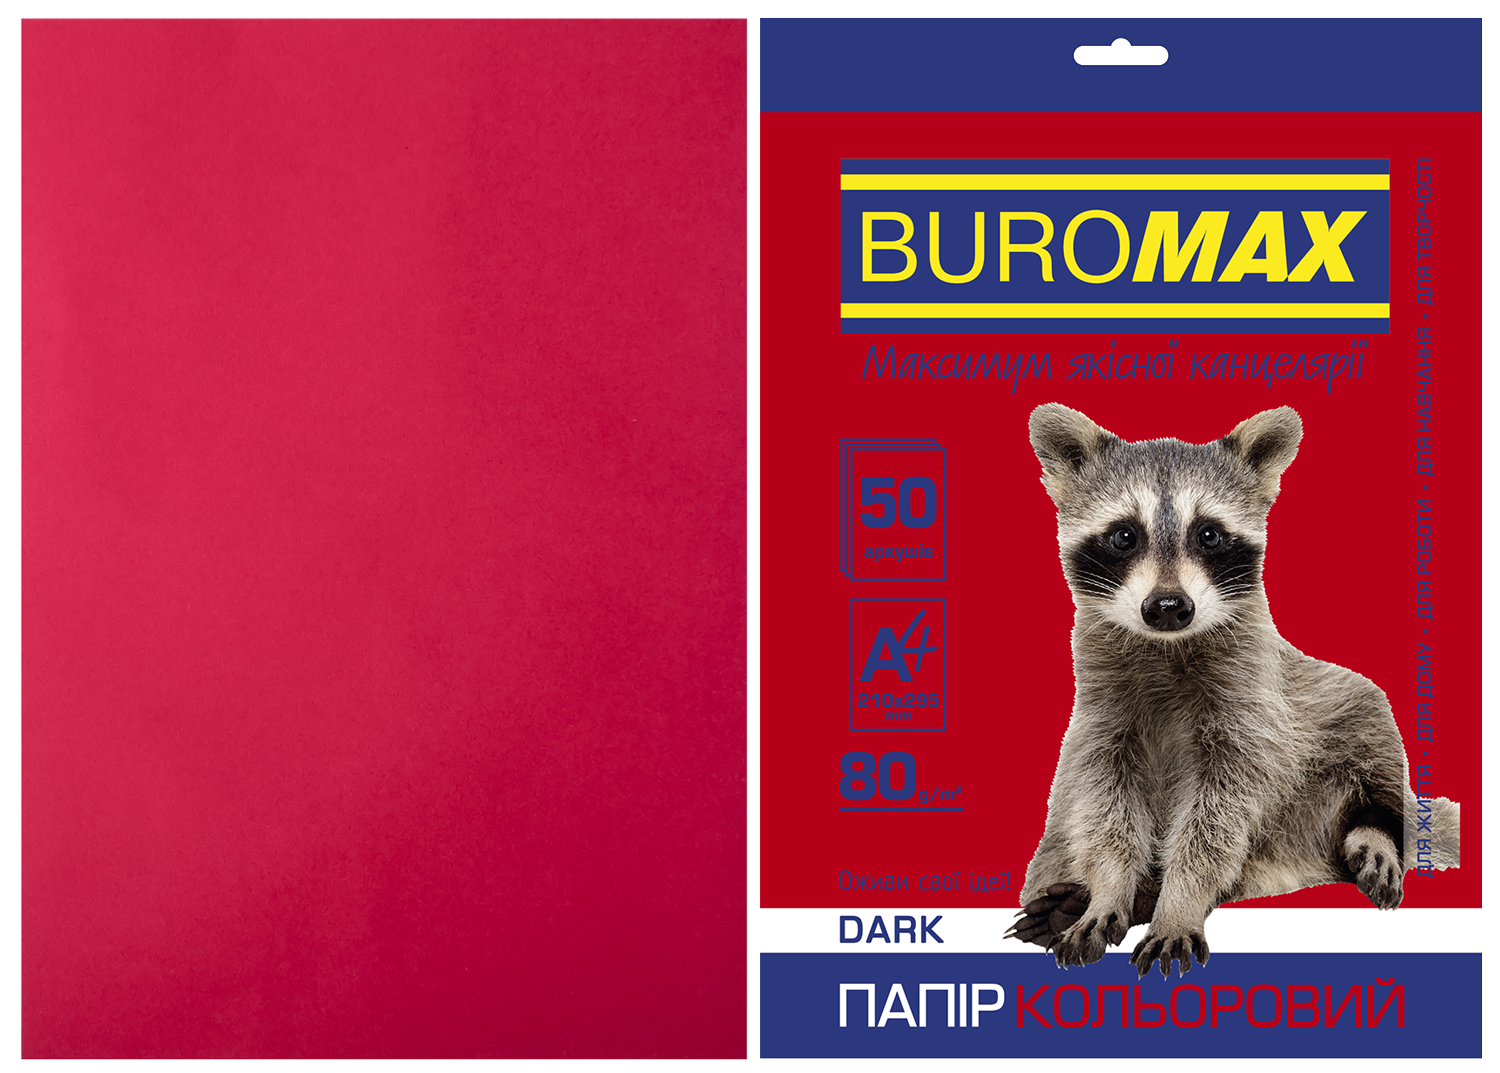 Набор цветной бумаги Buromax DARK А4, 80 г/м2, 50 листов, бордовый - №1